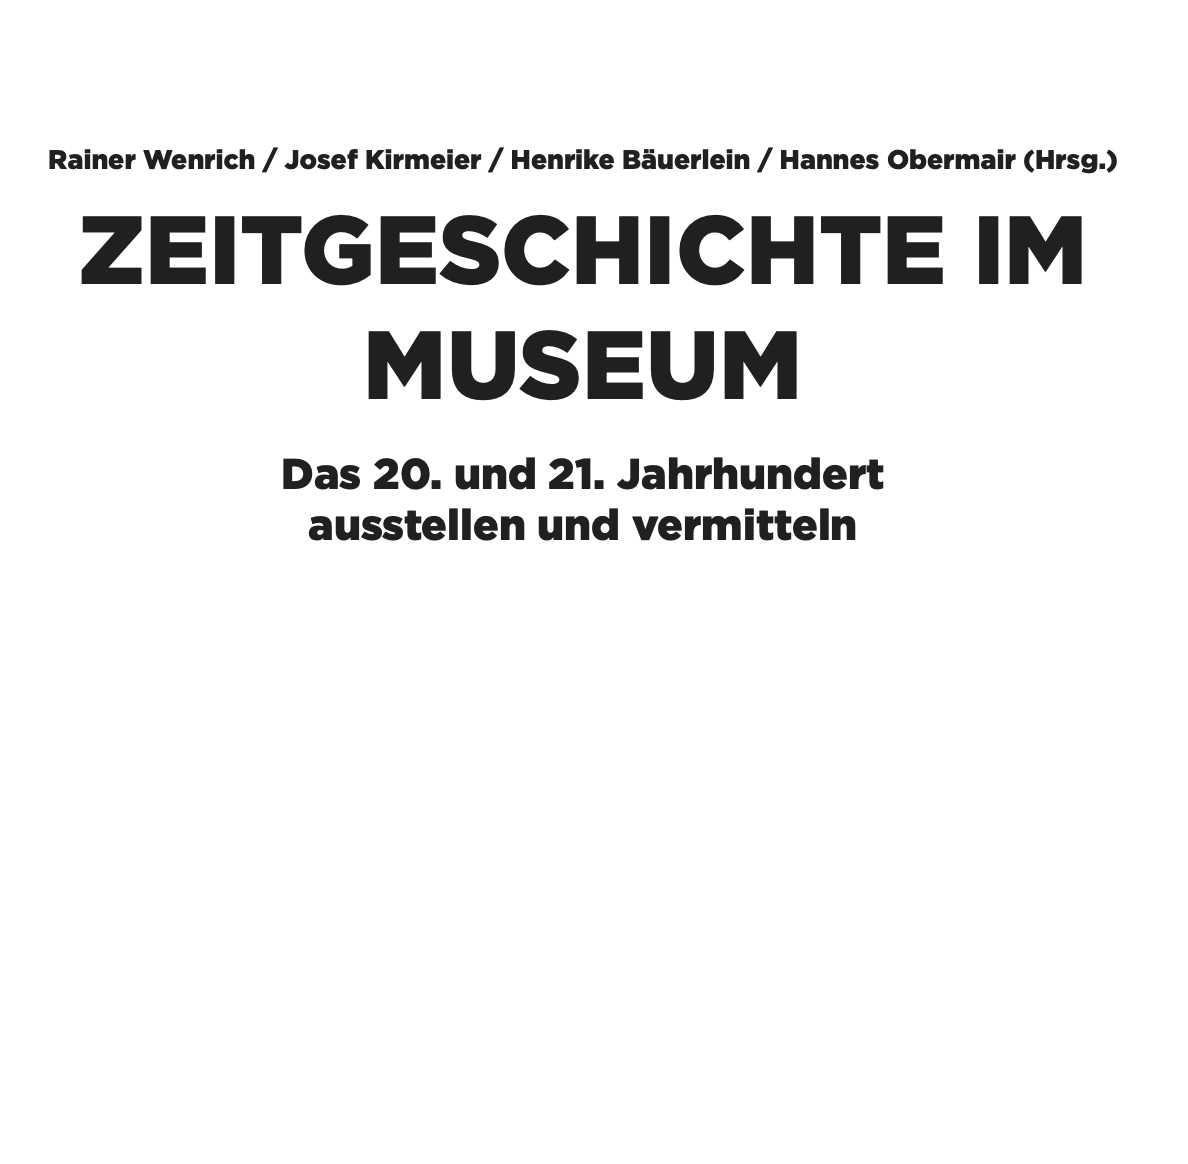 Haus der Geschichte Österreich – das zeitgenössische Museum als Diskussionsforum und Prozess